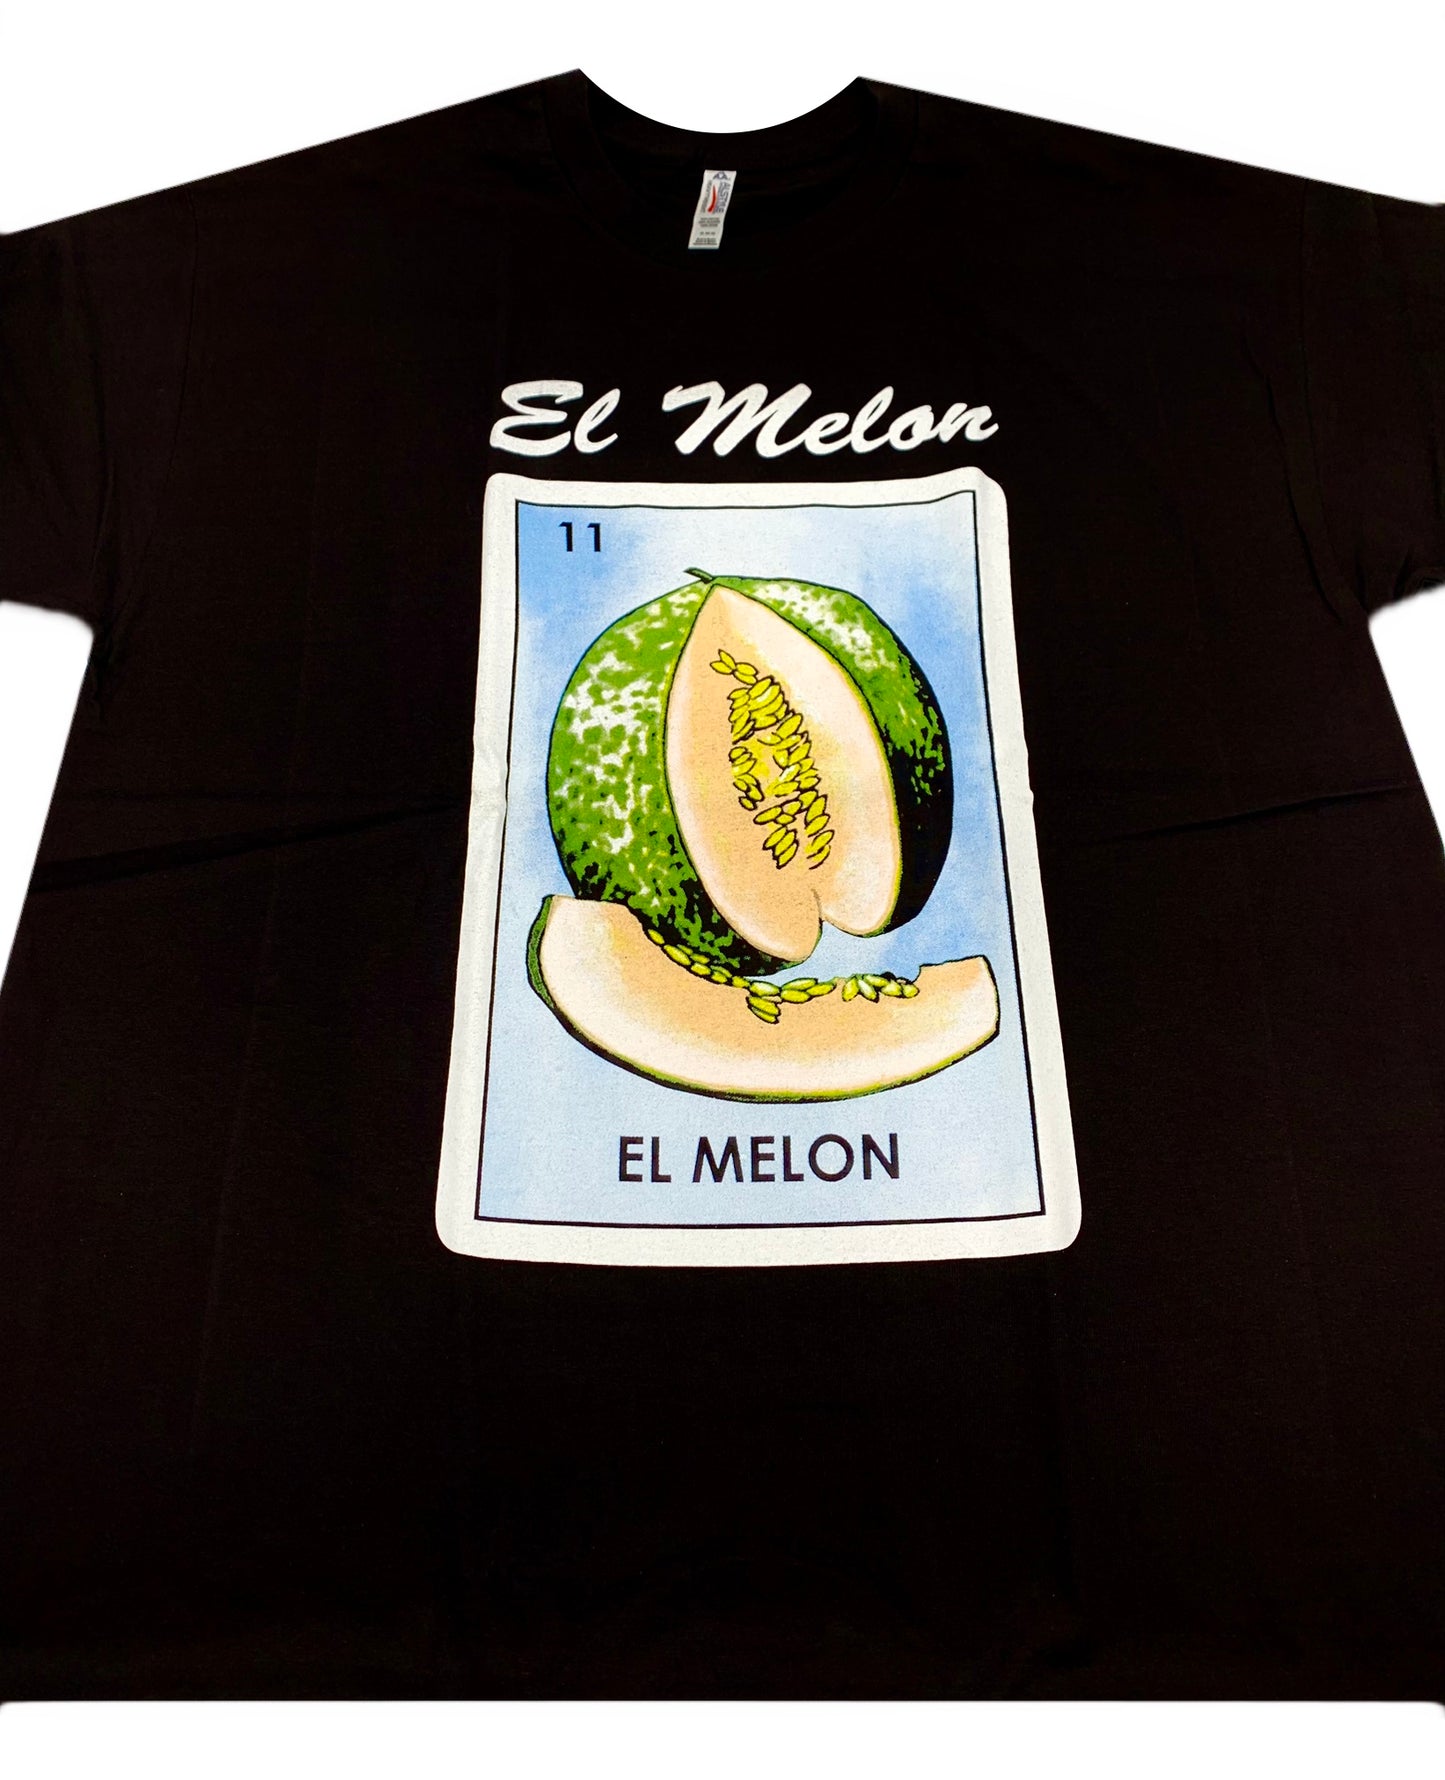 (12ct) El Melon T-shirts $6.99 EA